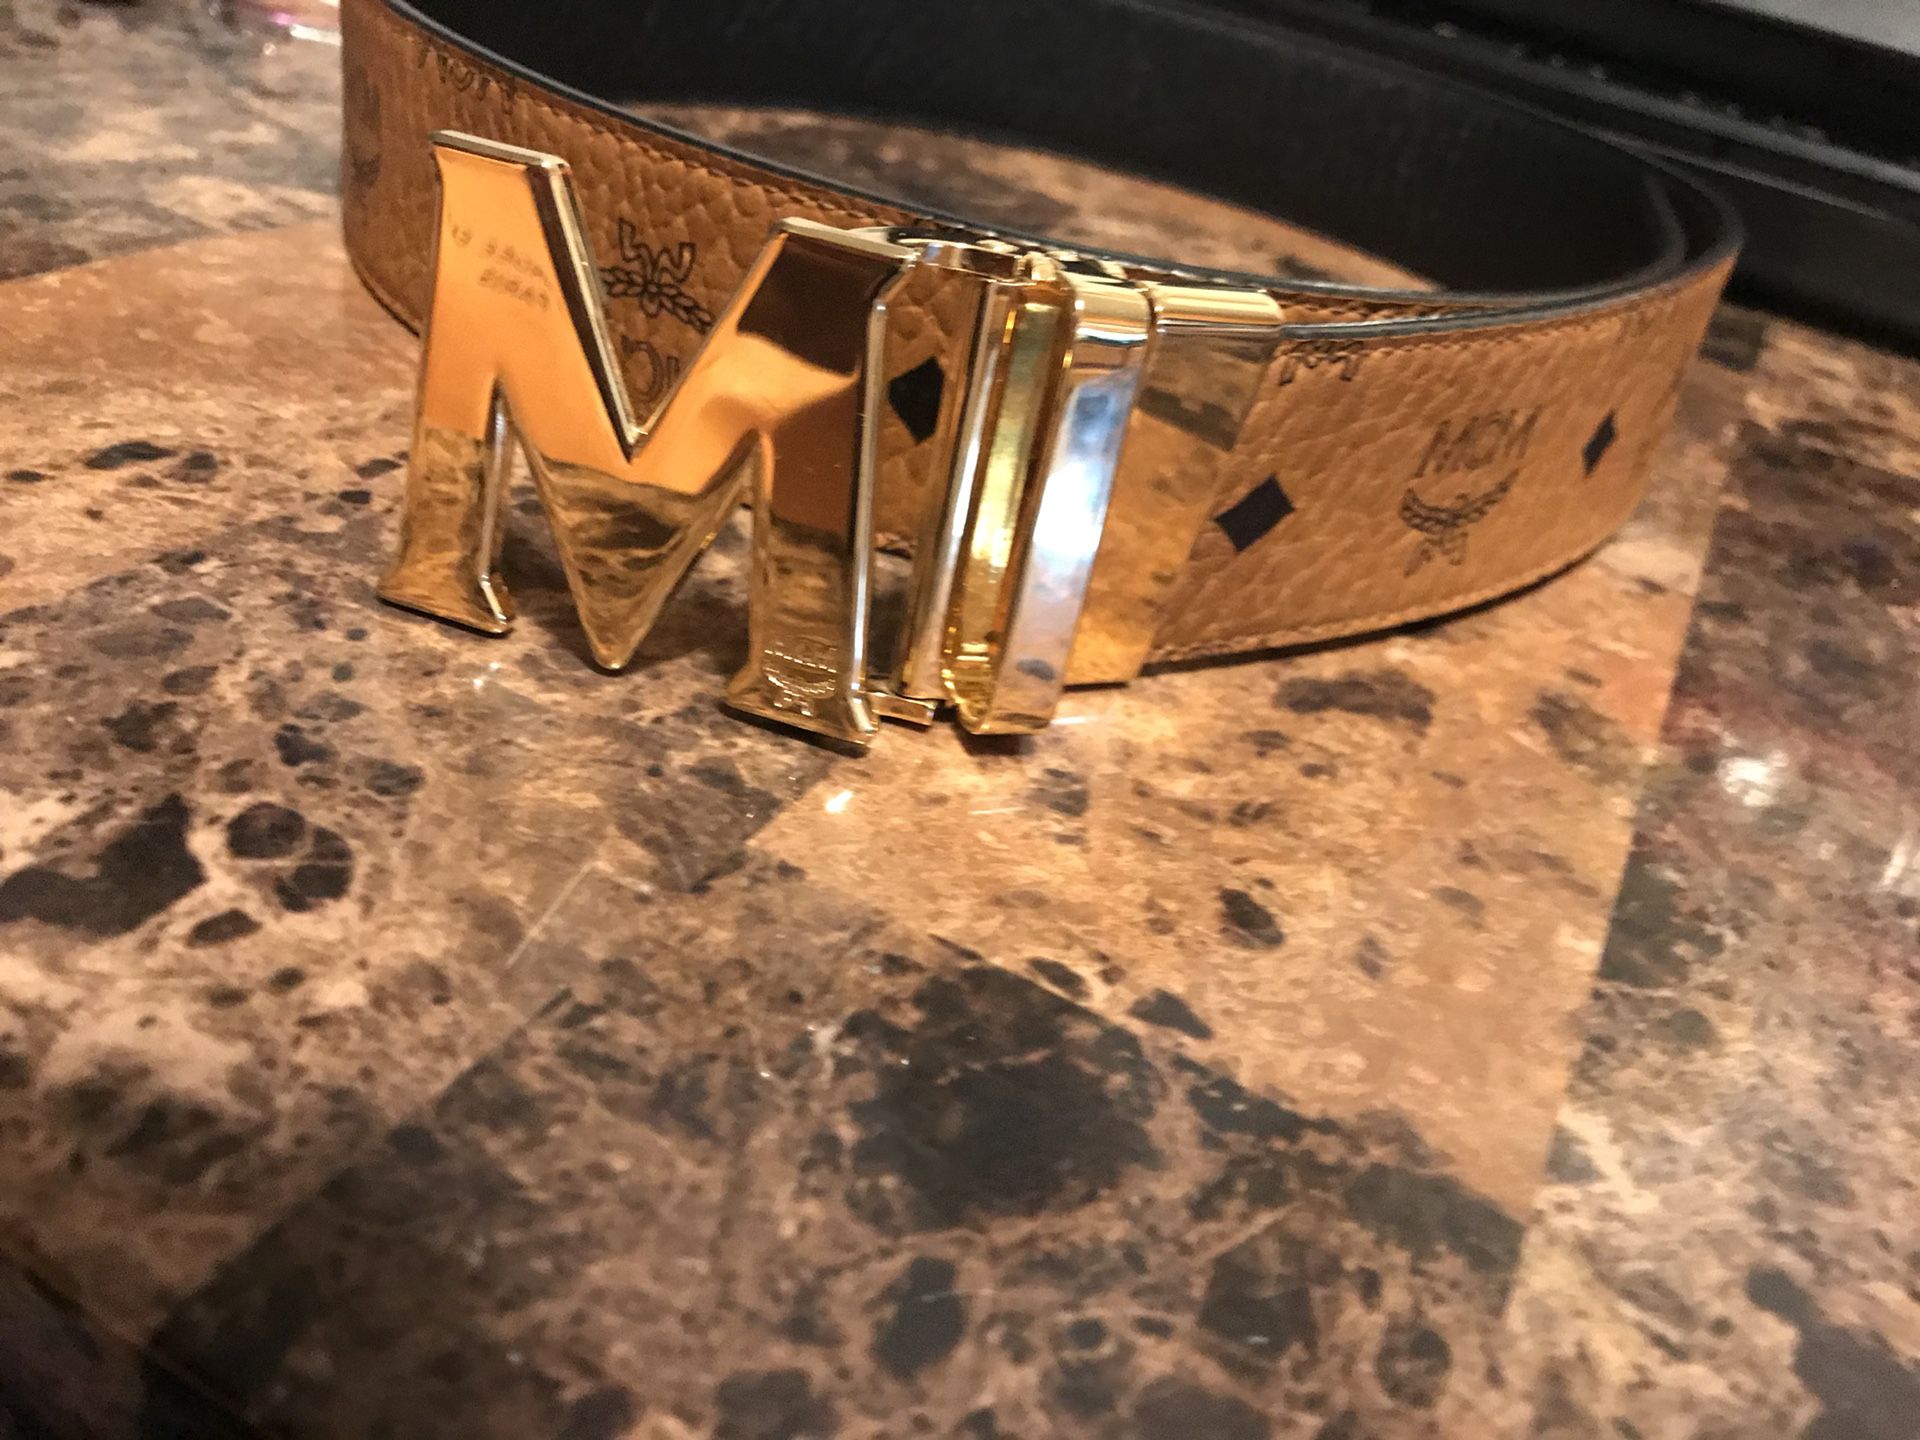 MCM Belt For Men for Sale in Quartz Hill, CA - OfferUp